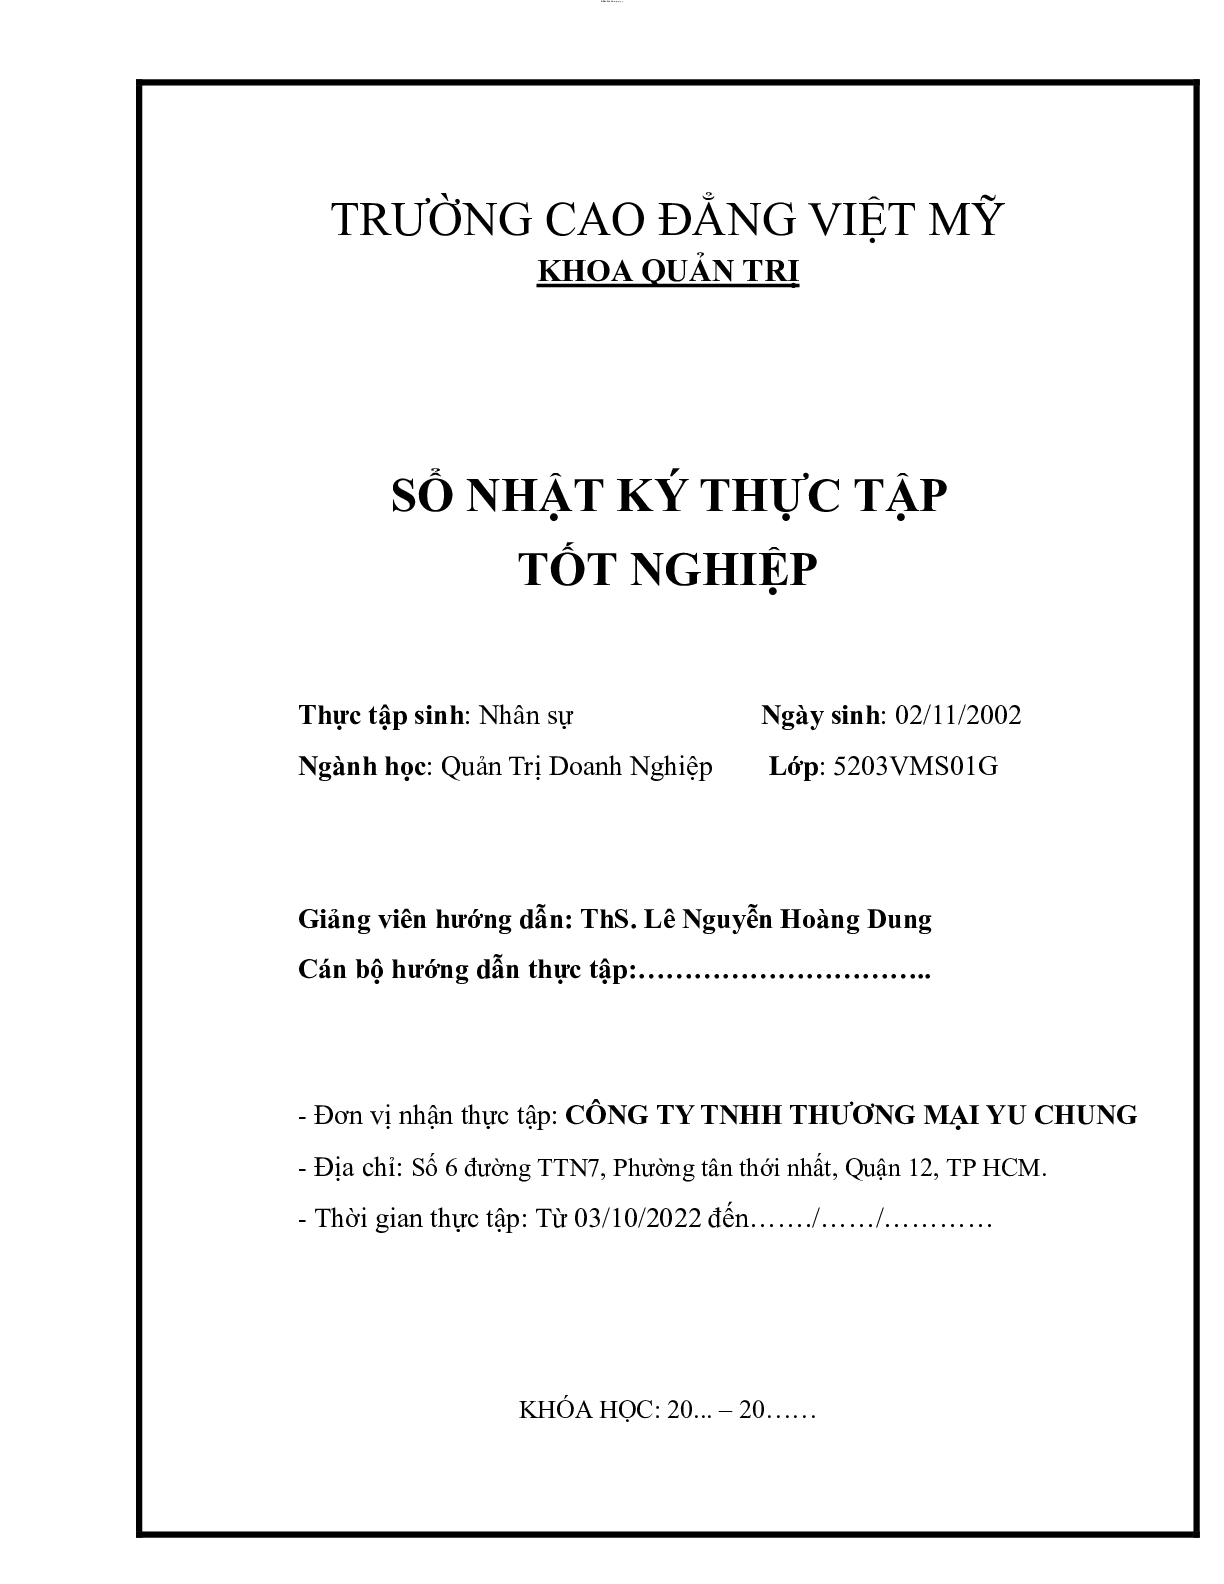 Mẫu Báo cáo thực tập nhân sự | Trường cao đẳng Việt Mỹ (trang 2)